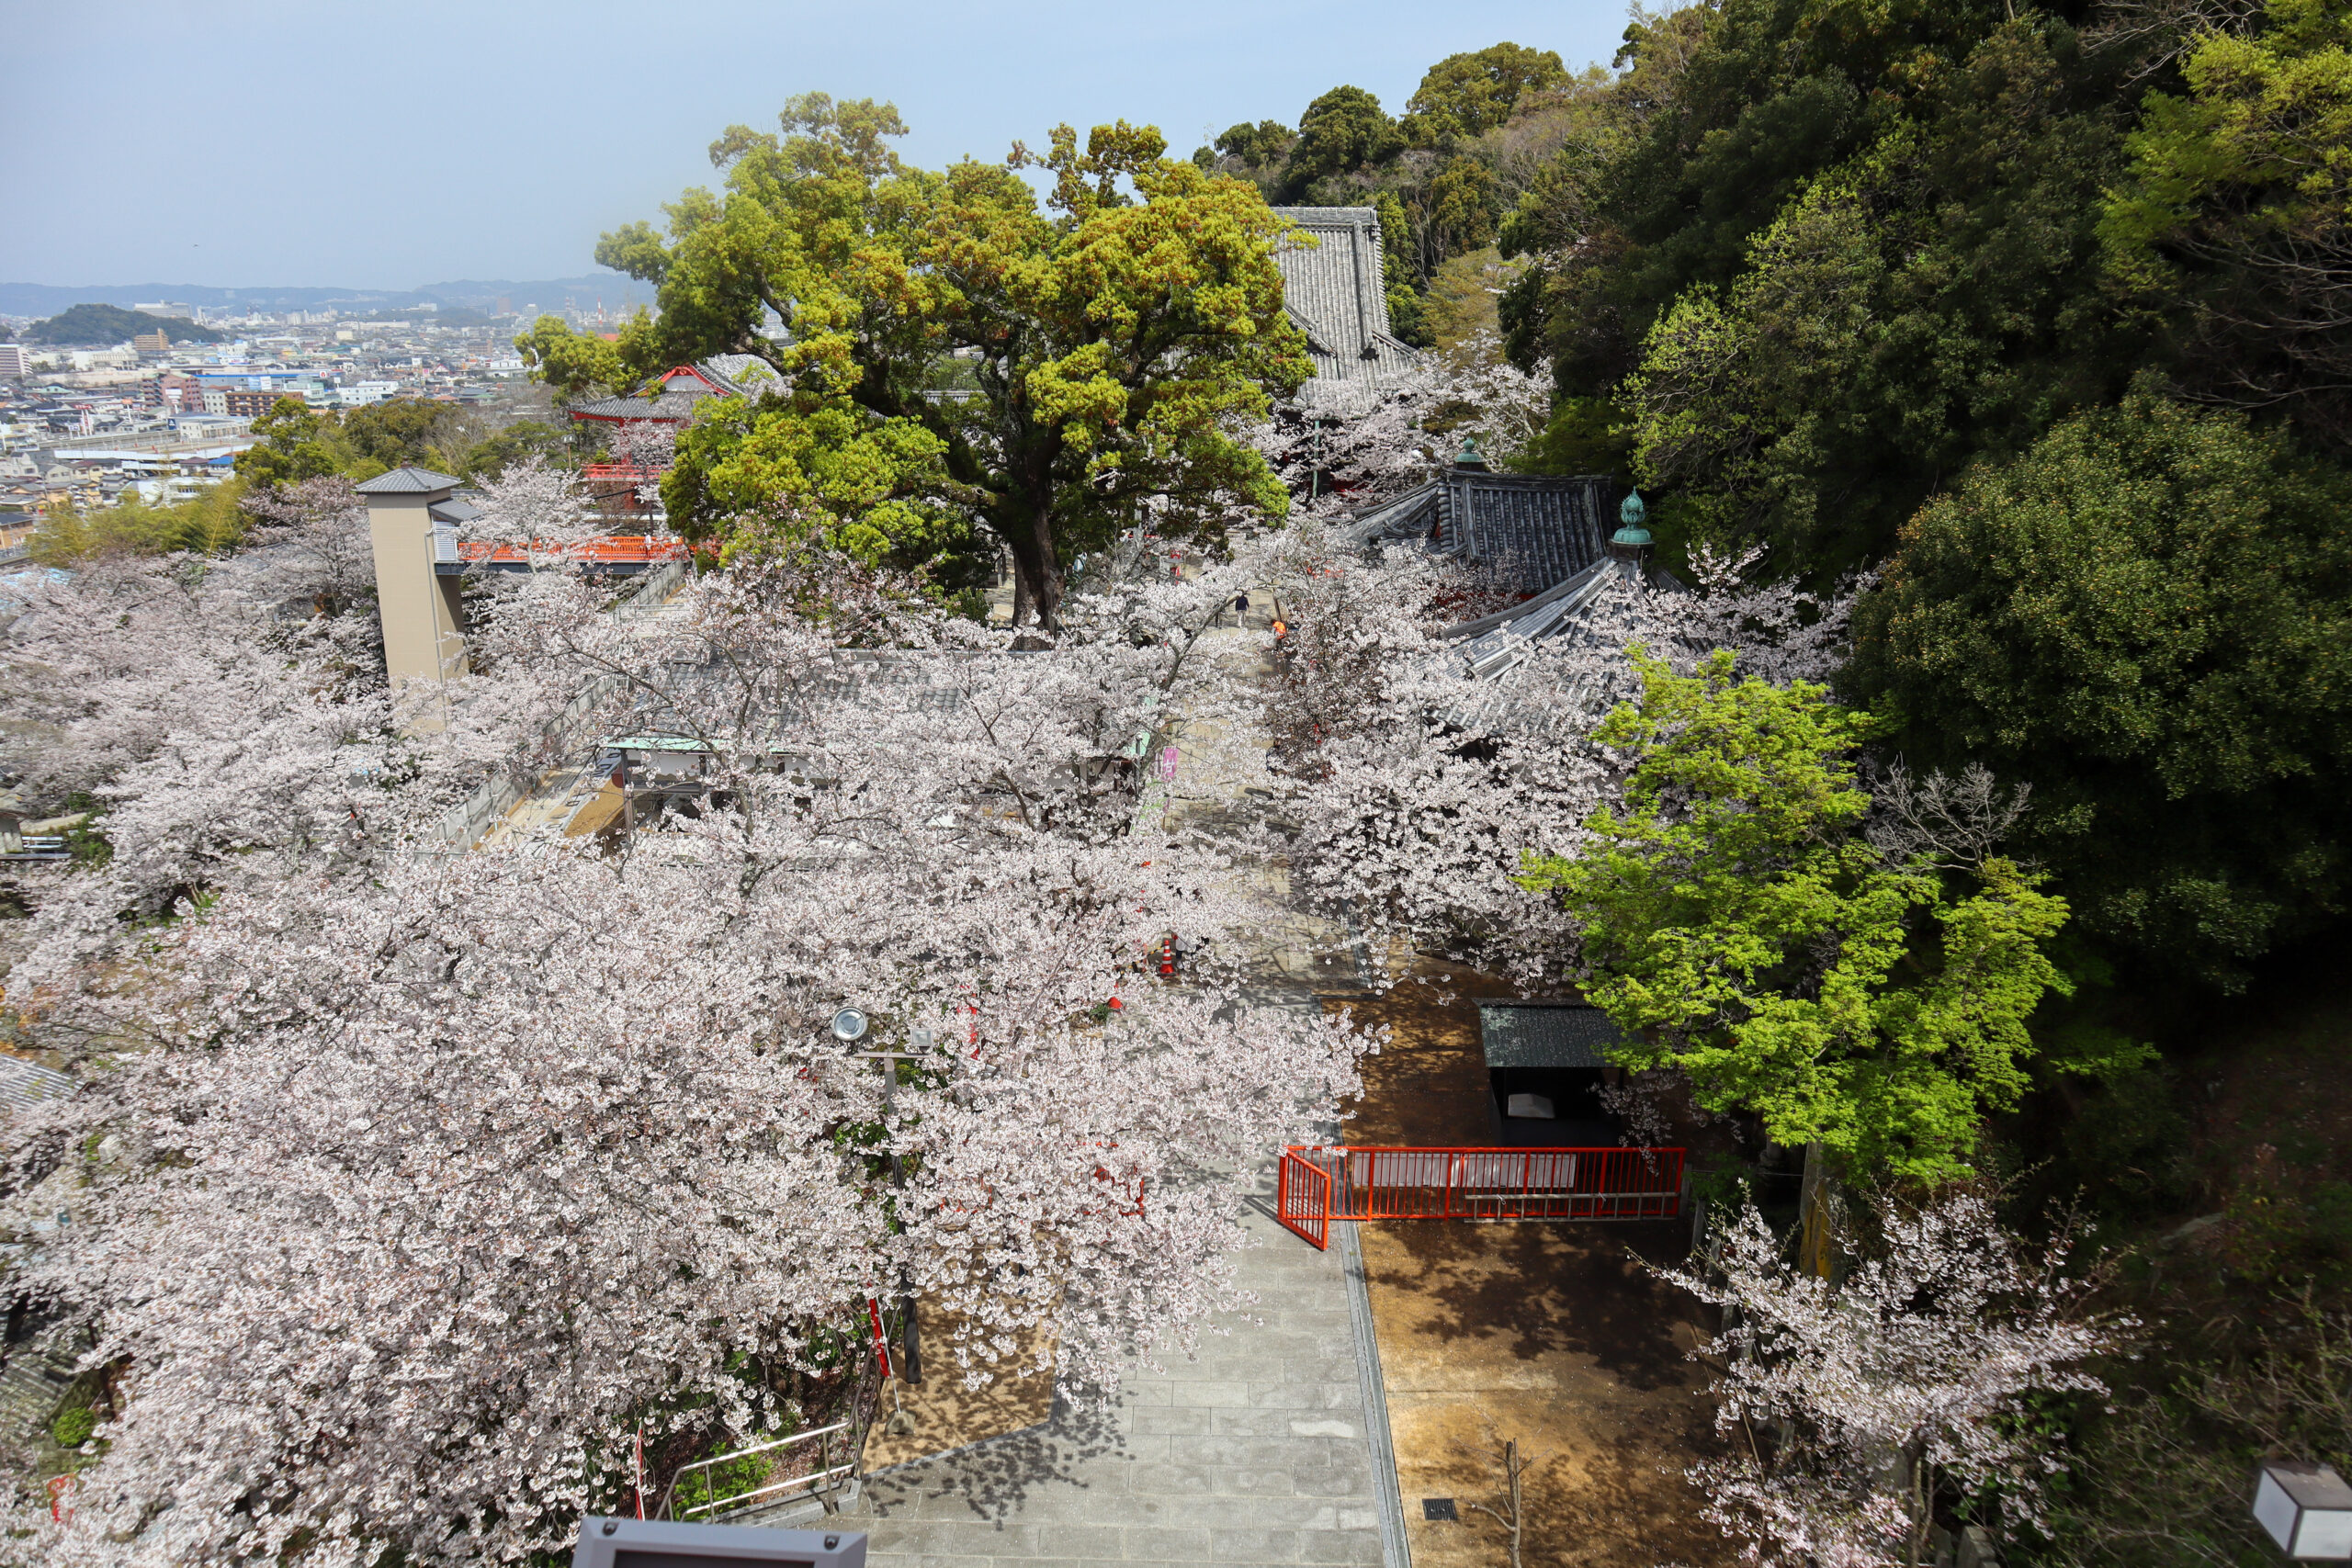 紀三井寺・千手十一面観音像の祀られている建物の3階から見える美しい桜の景色